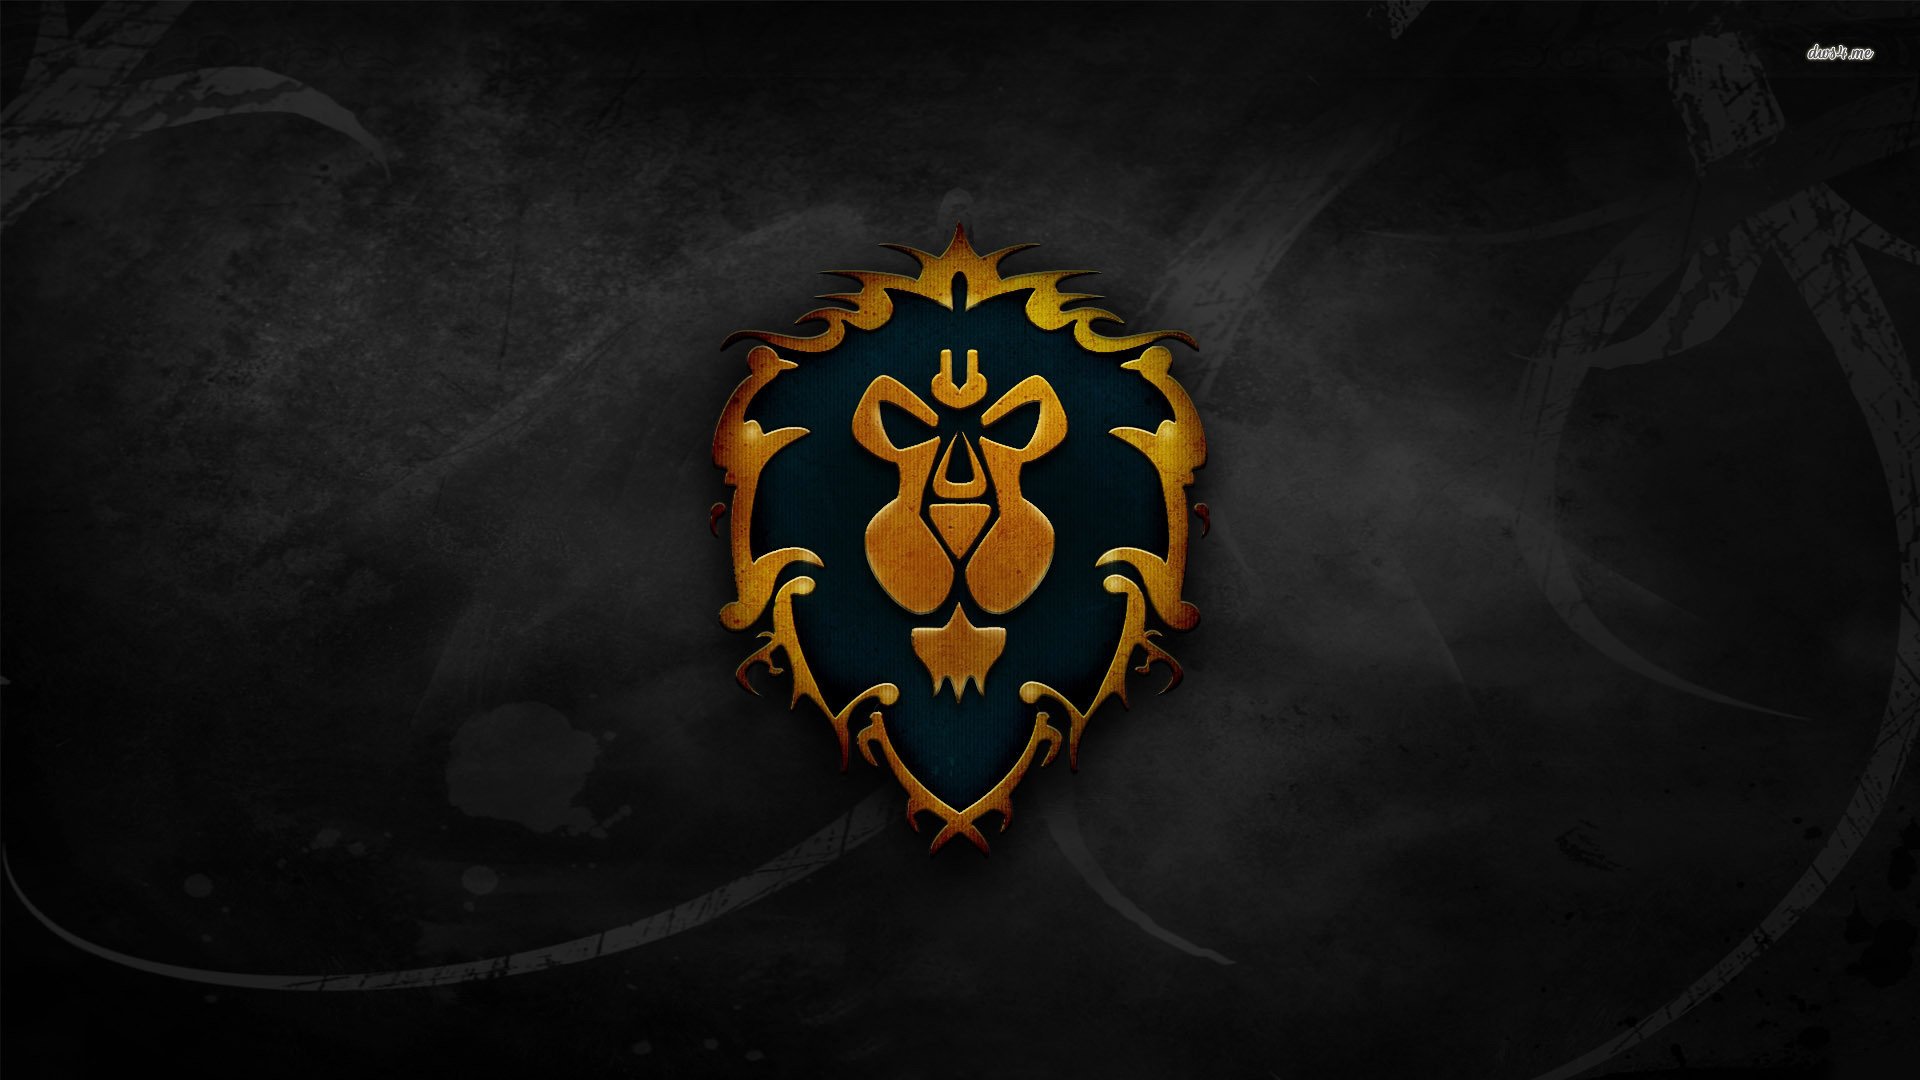 World of Warcraft Alliance Logo photo - 1